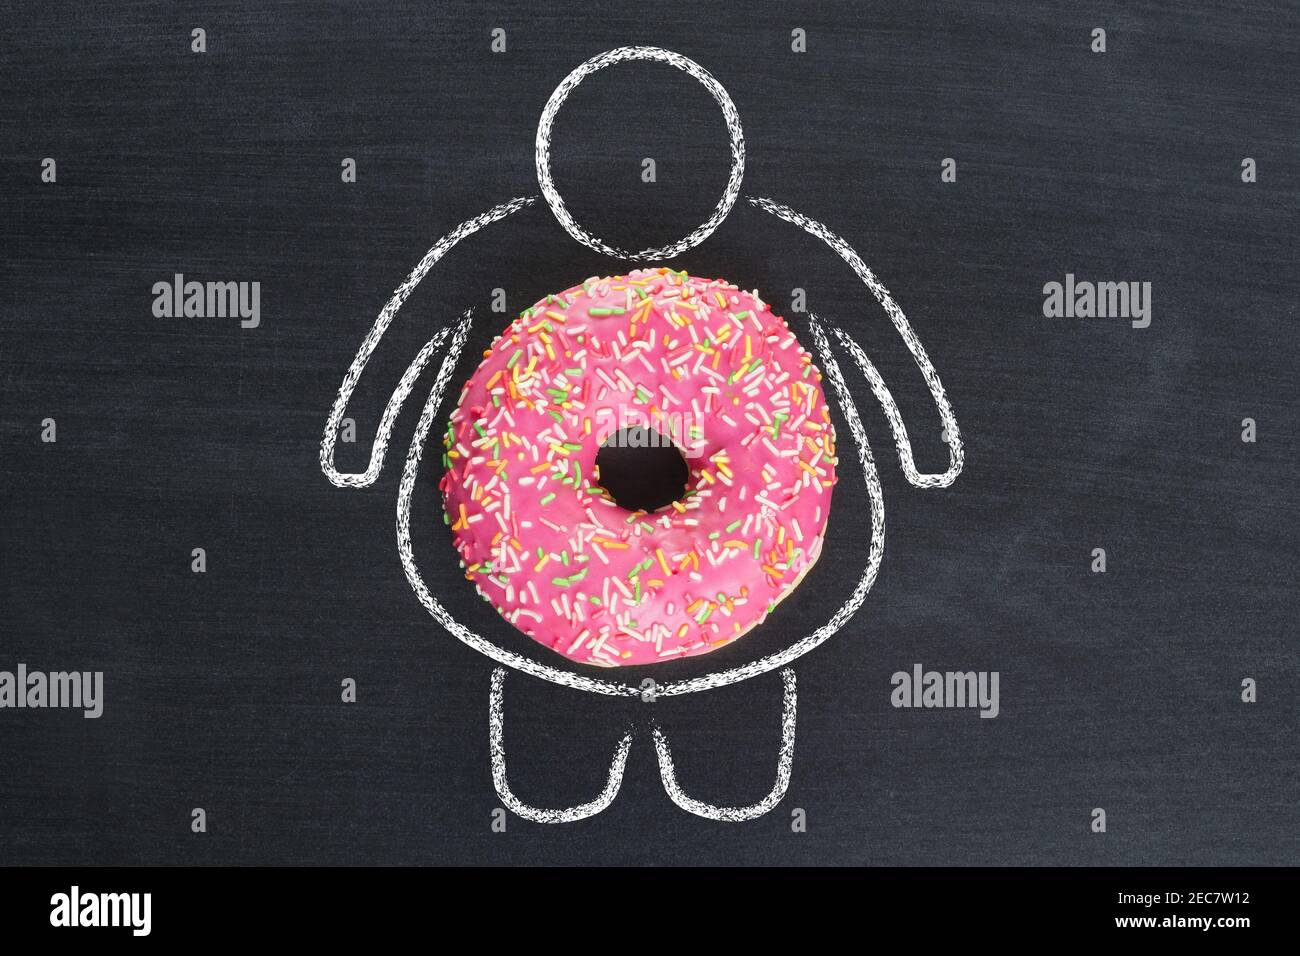 Ungesunde Essgewohnheiten. Silhouette mit Übergewicht und Donut als ungesunde Ernährung Konzept Stockfoto